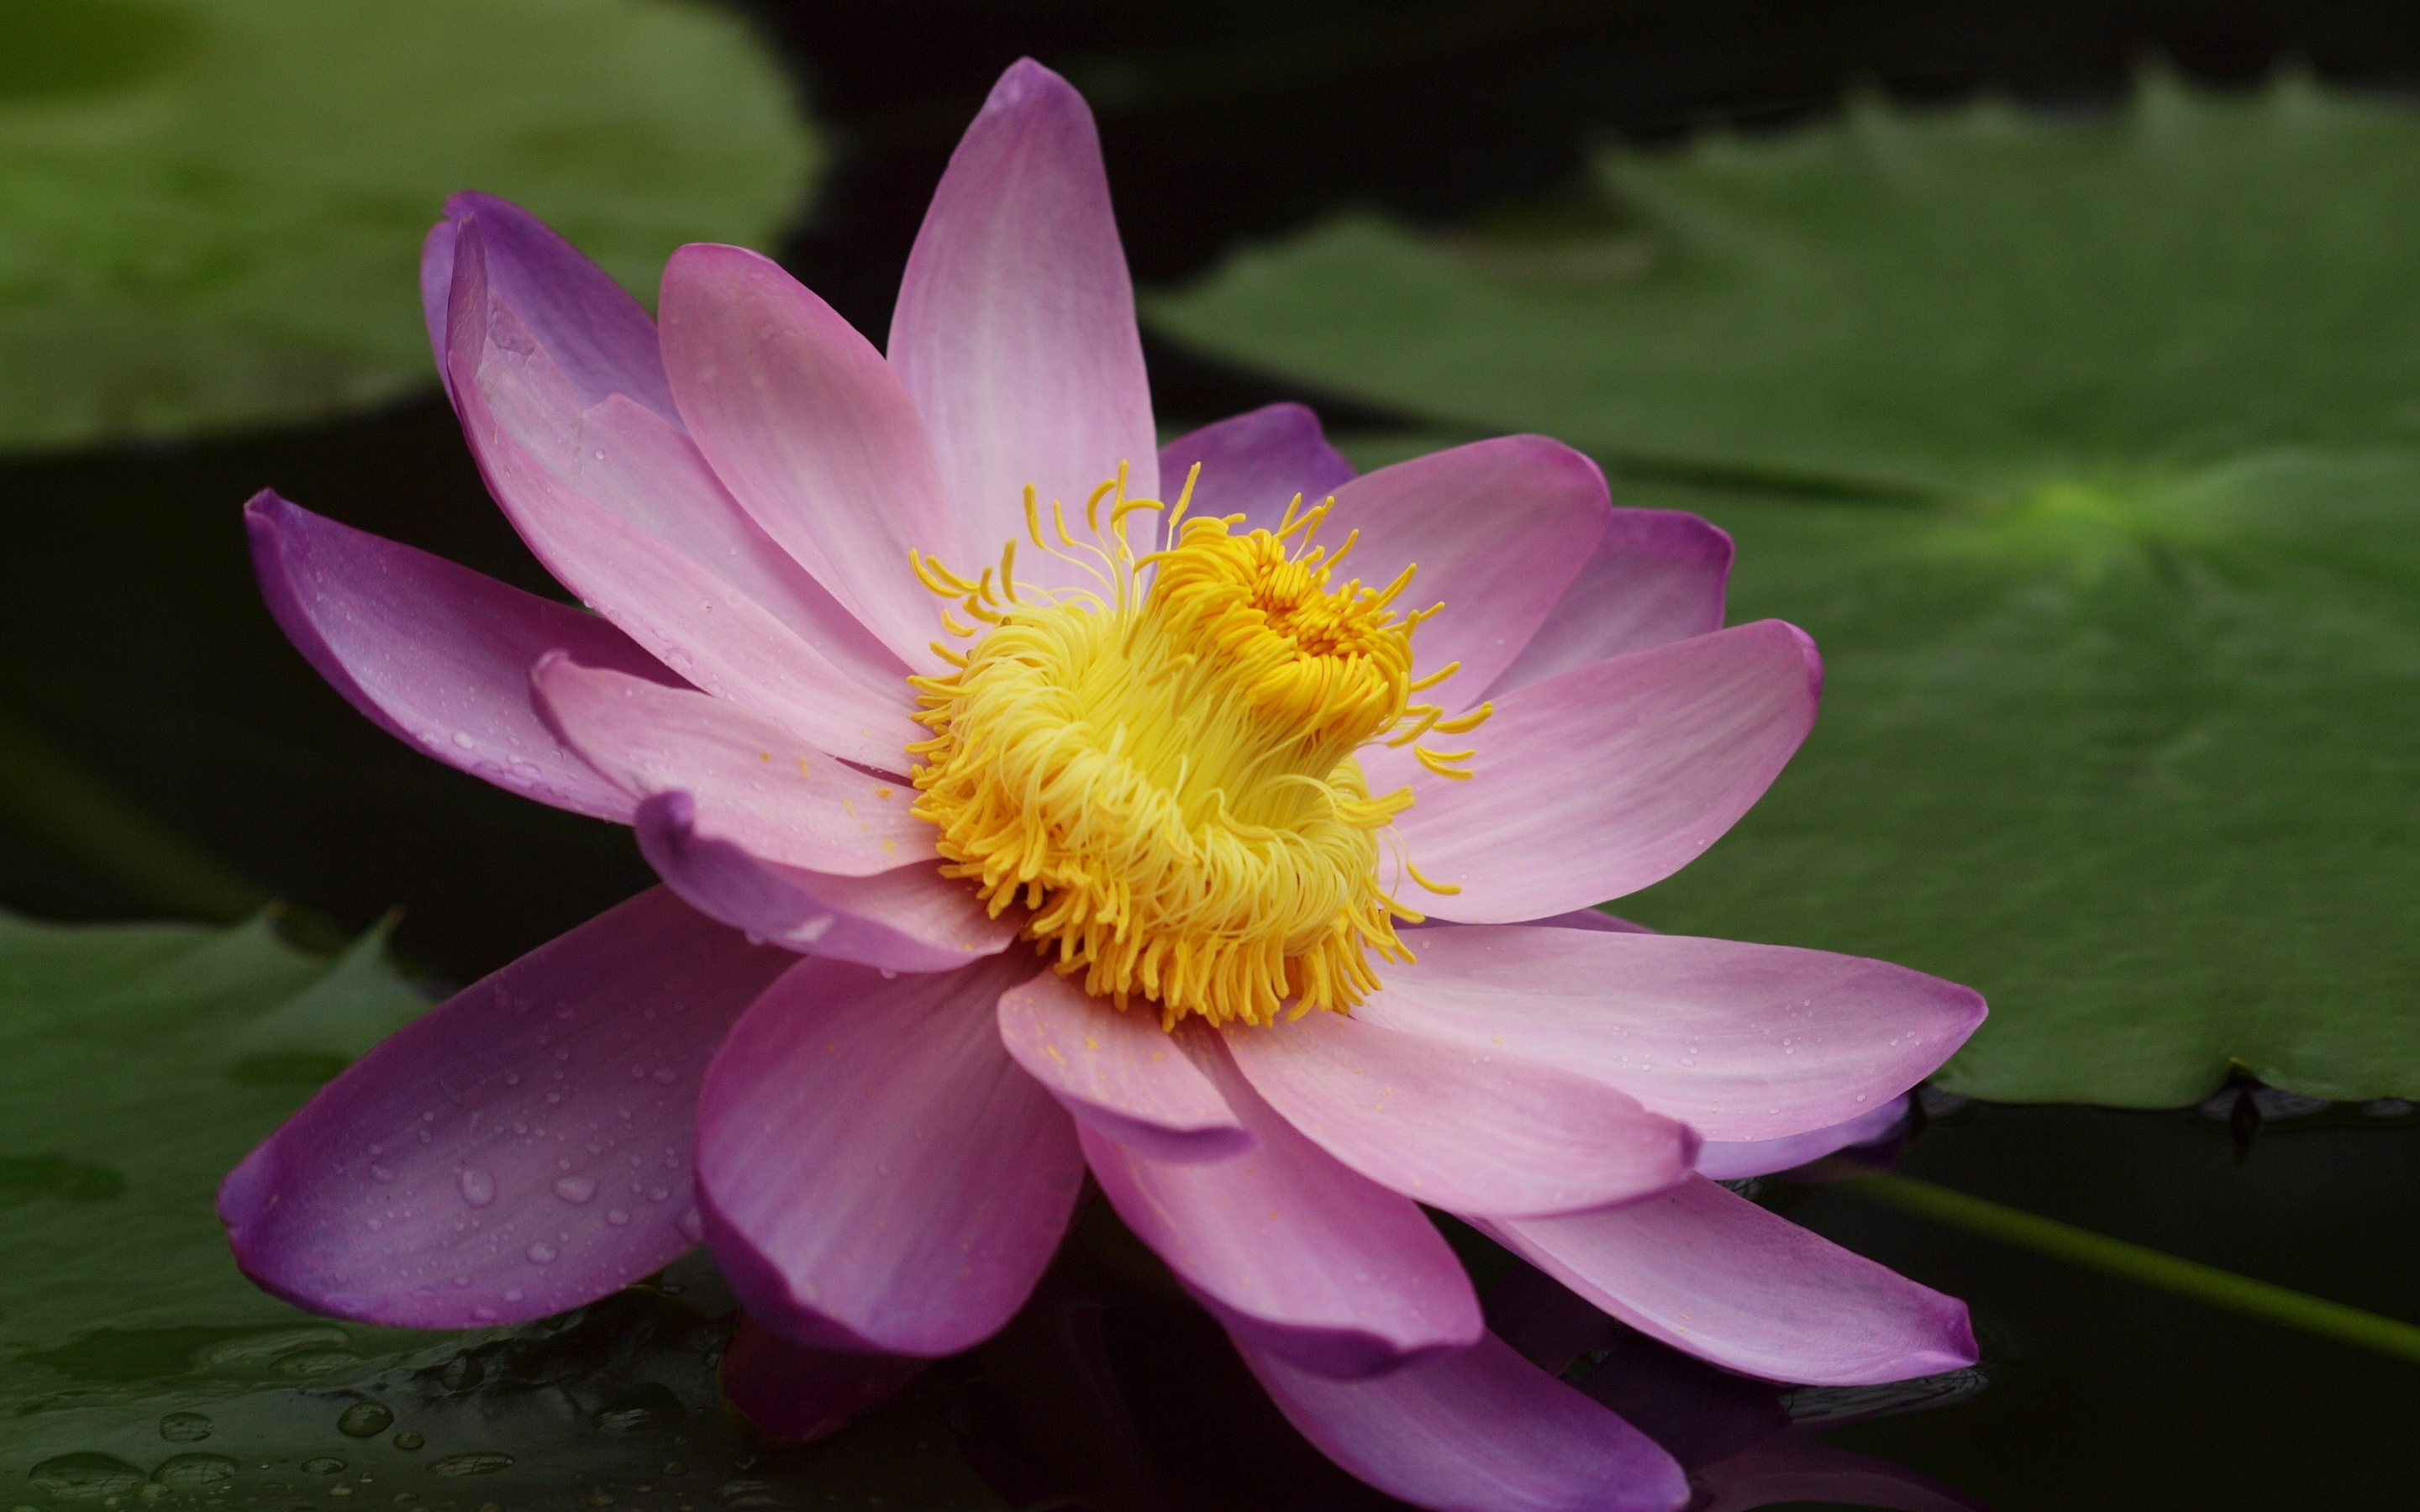 Image: Flower, Lotus, pink, leaves, water